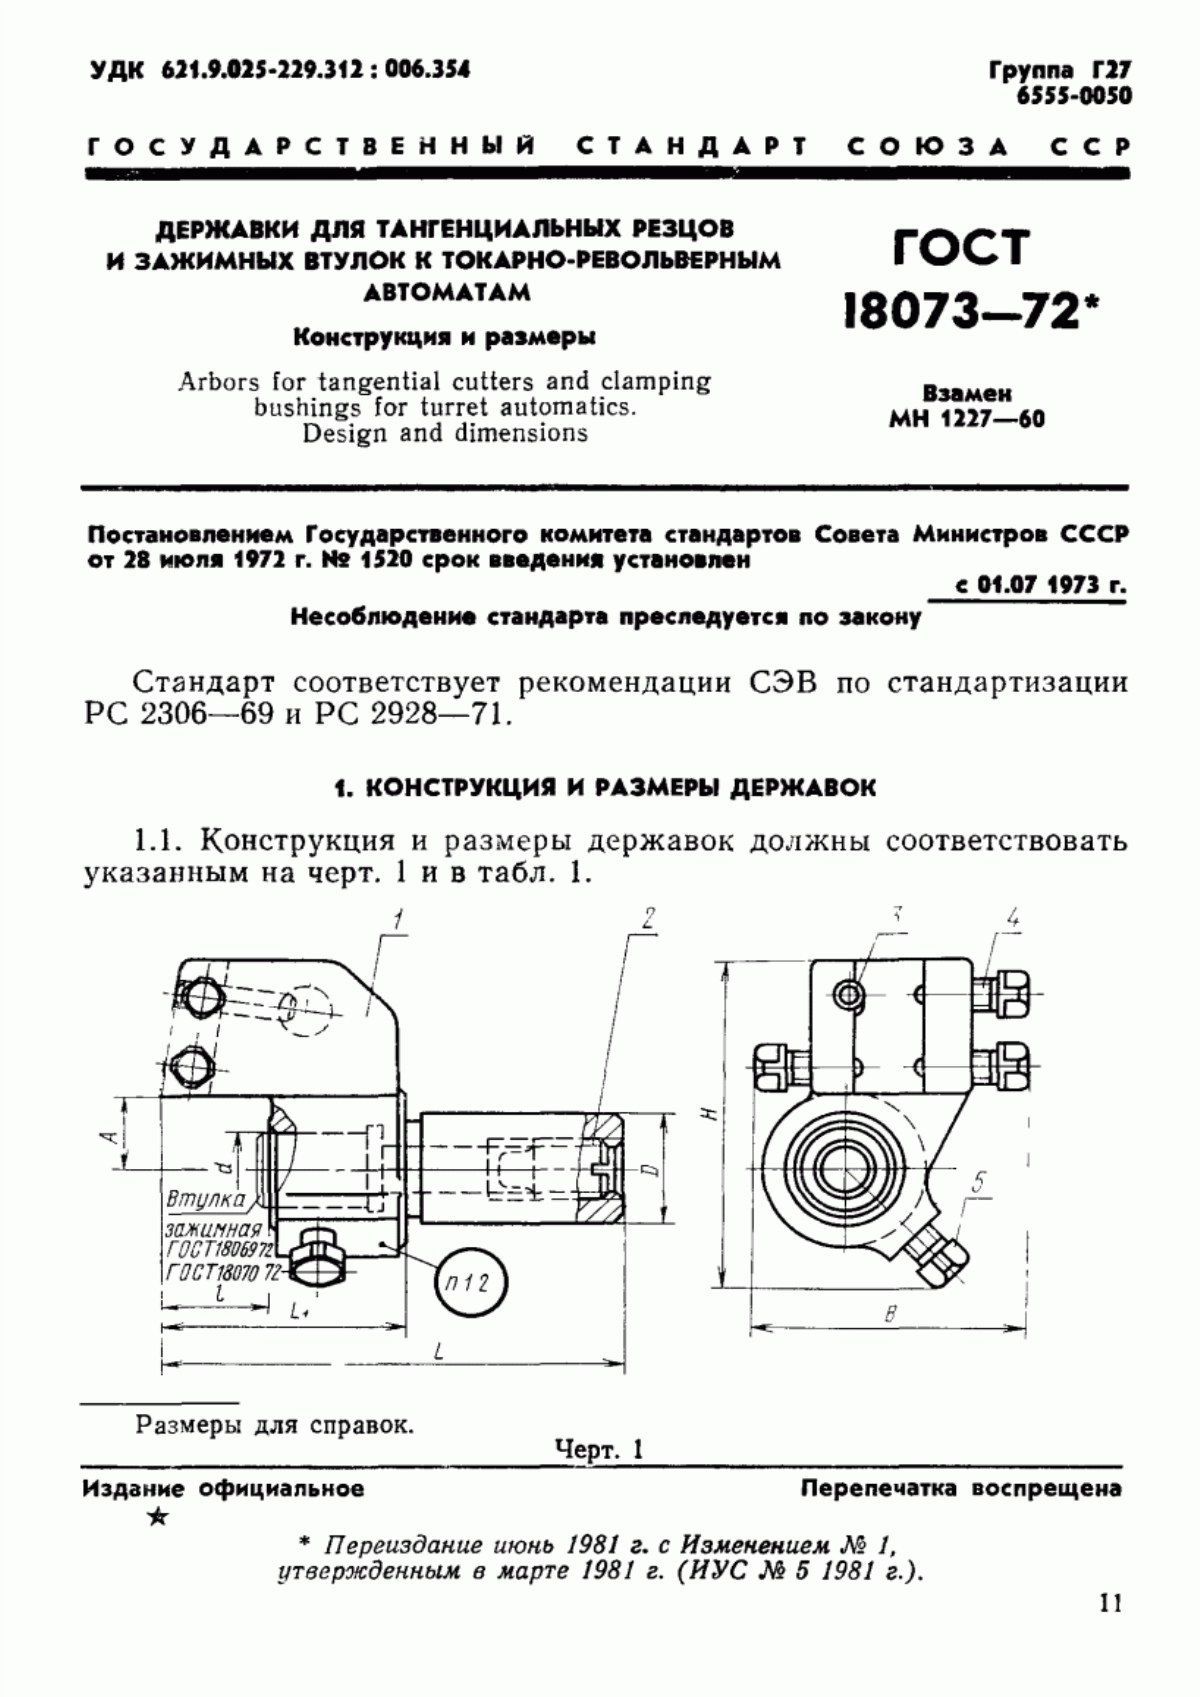 ГОСТ 18073-72 Державки для тангенциальных резцов и зажимных втулок к токарно-револьверным автоматам. Конструкция и размеры